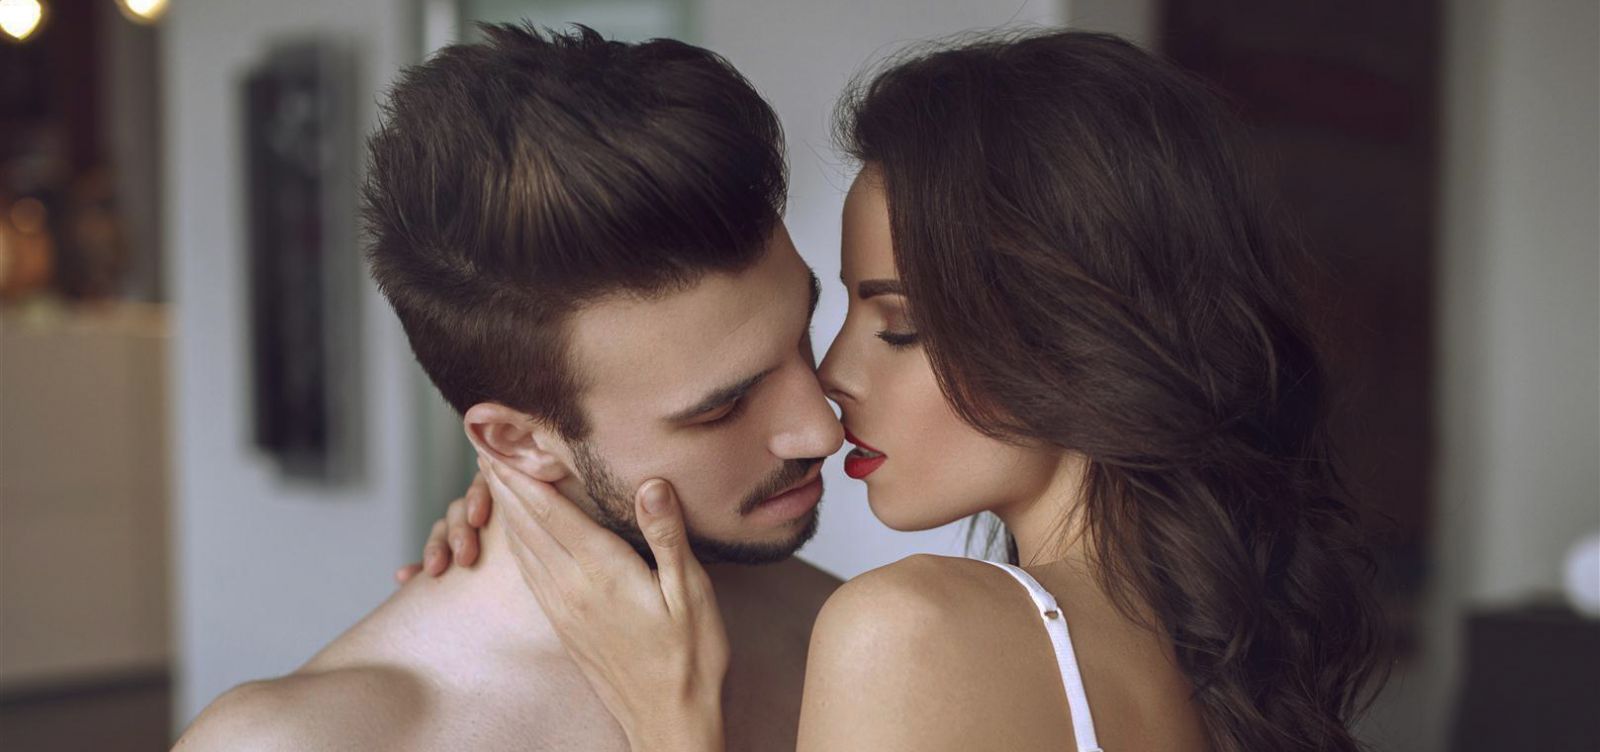 Γιατί όταν φιλάτε κάποιον γέρνετε προς τα δεξιά; Η επιστημονική εξήγηση